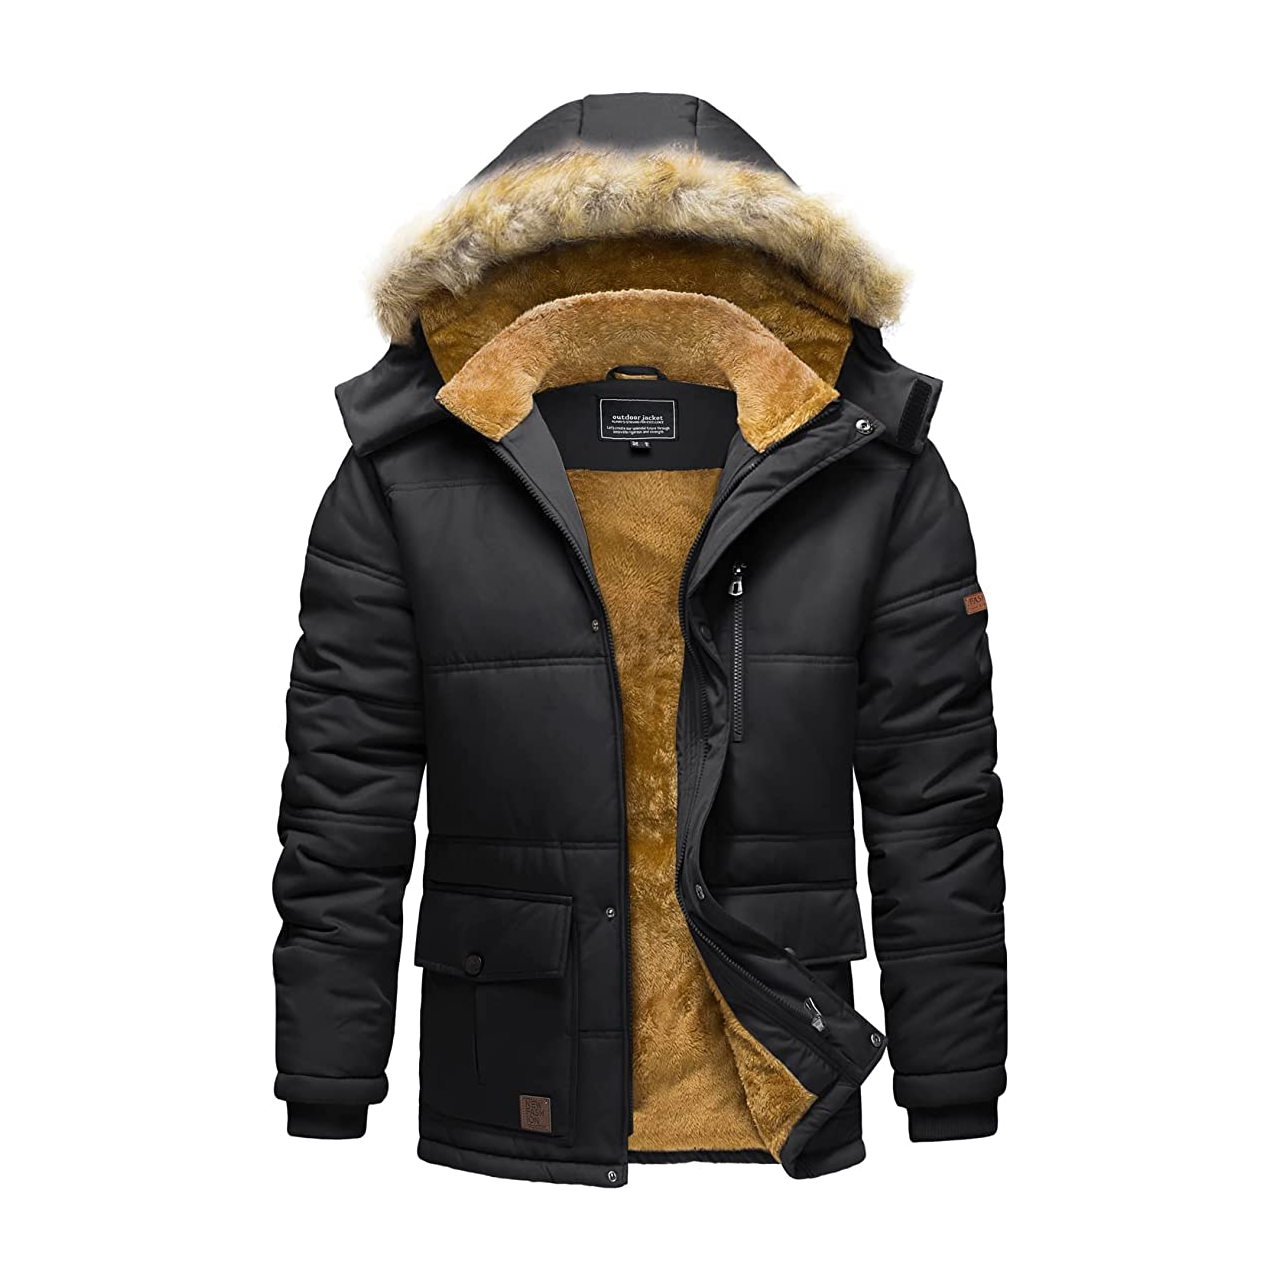 Men's Winter Jacket On Rent - Outdoor Gear